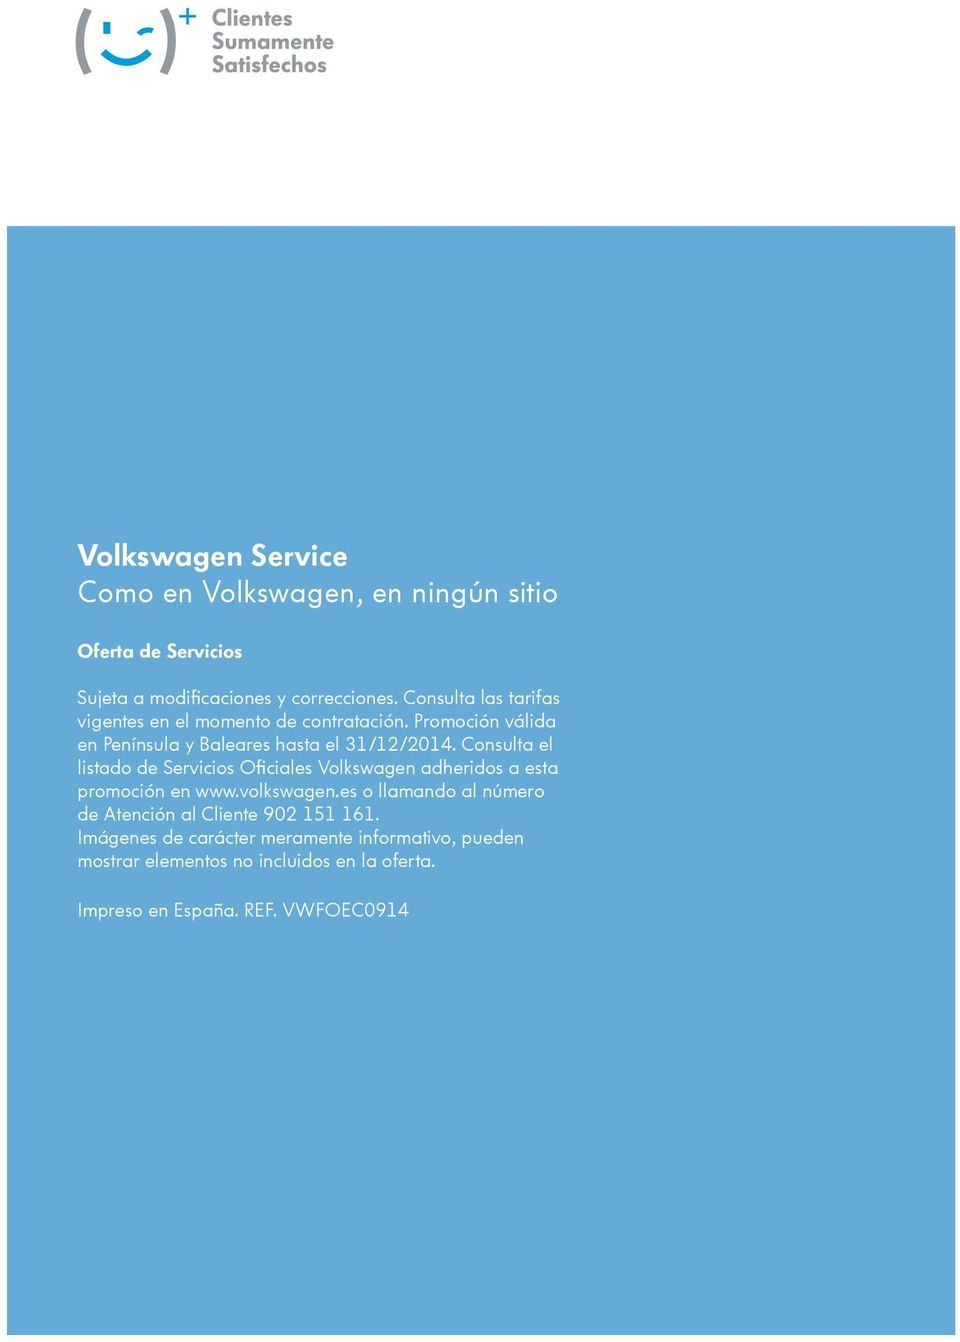 Consulta el listado de Servicios Oficiales Volkswagen adheridos a esta promoción en www.volkswagen.